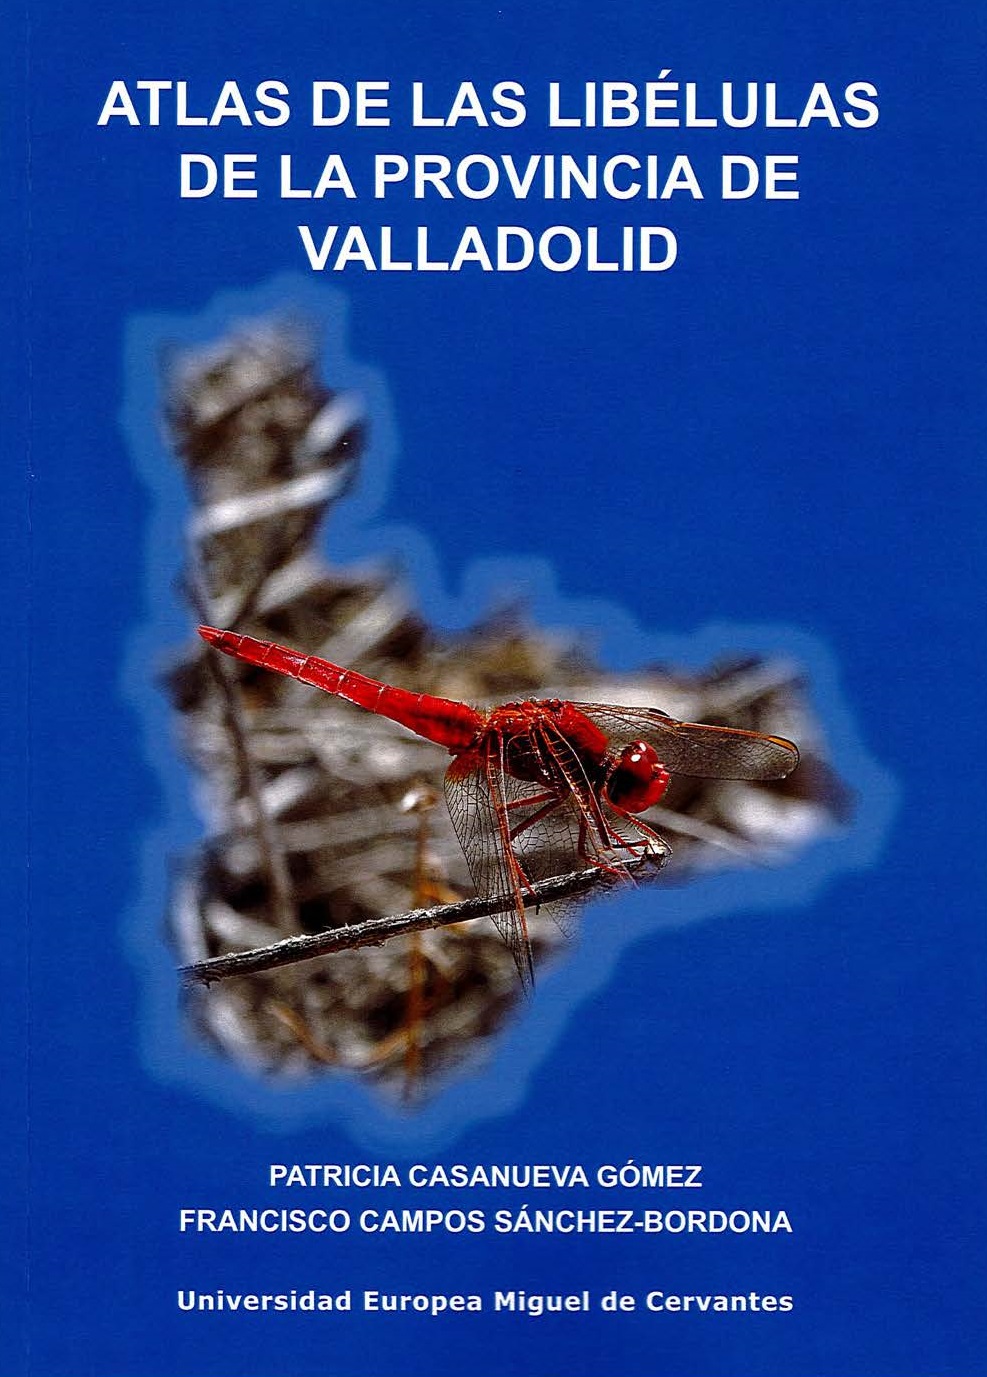 Imagen de portada del libro Atlas de las libélulas de la provincia de Valladolid